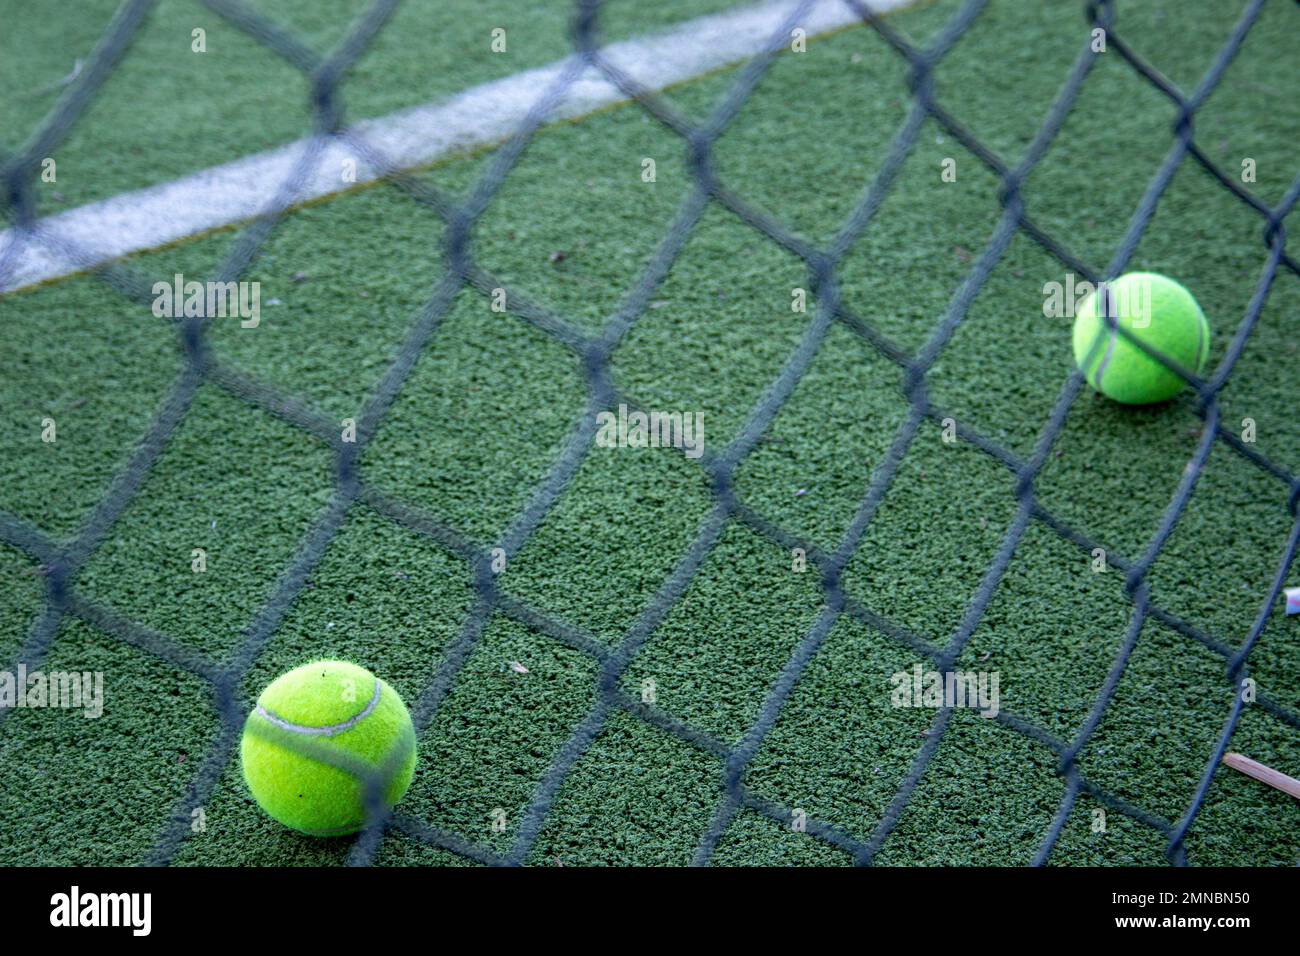 palle da tennis su un campo da paddle in erba artificiale visto dietro una recinzione Foto Stock